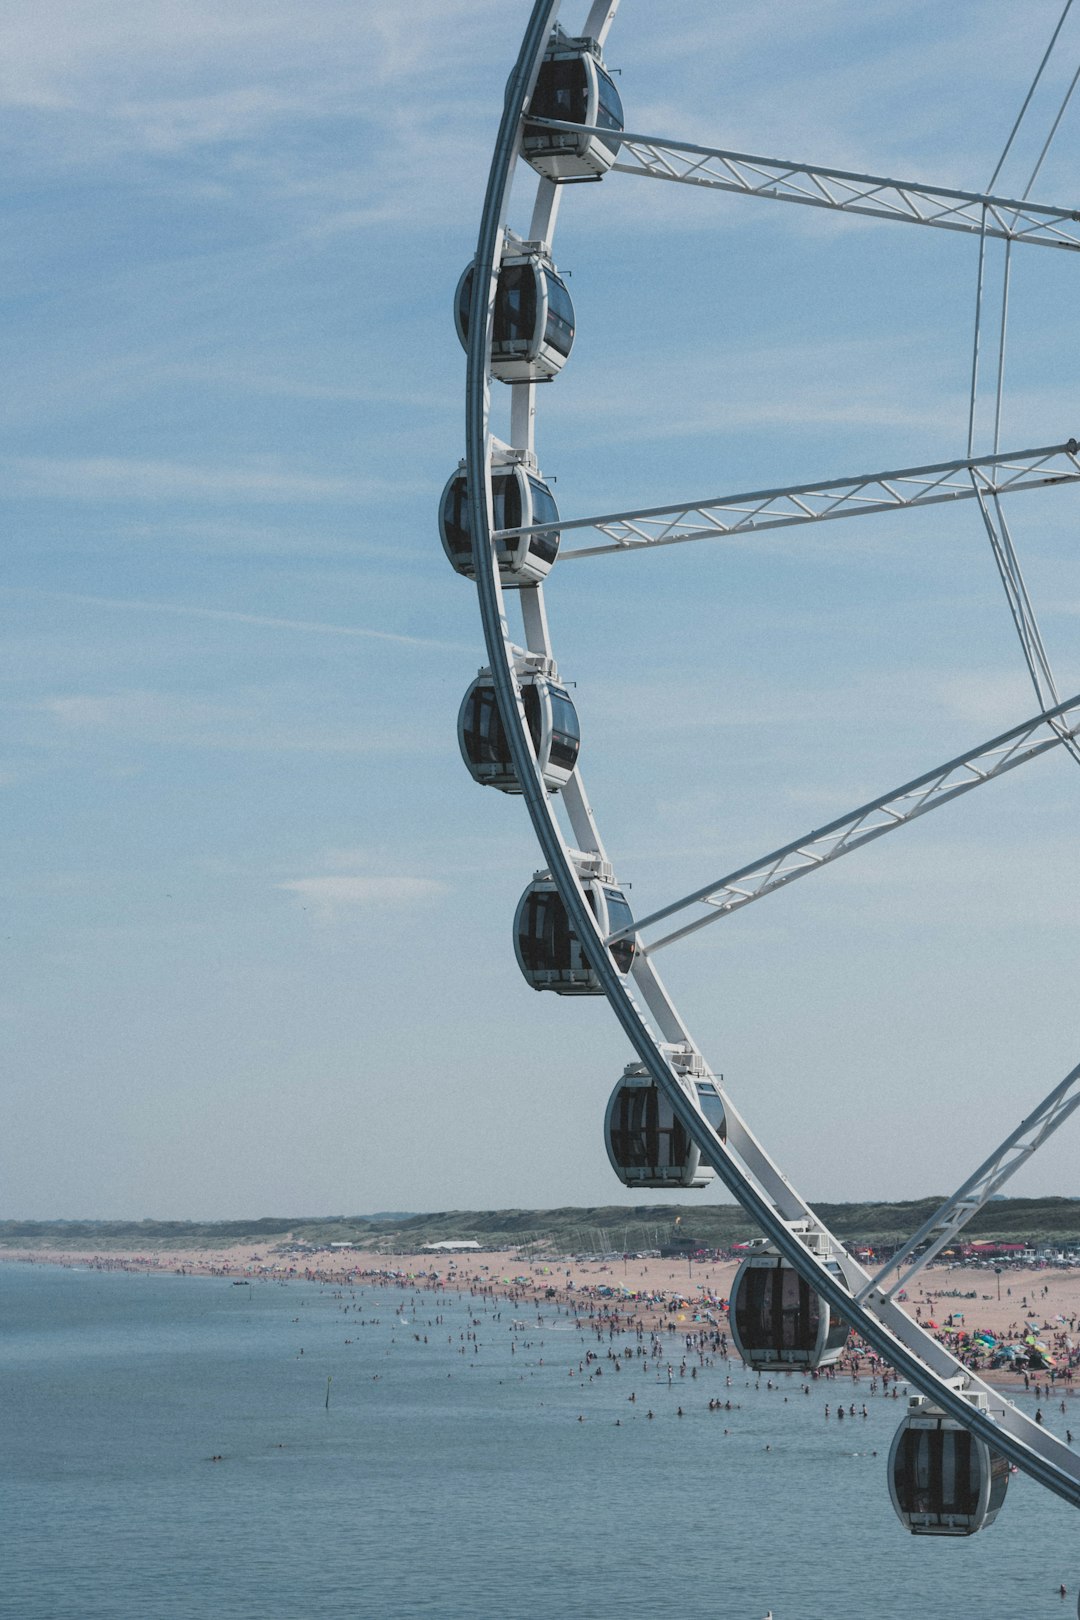 Ferris wheel photo spot Den Haag Netherlands